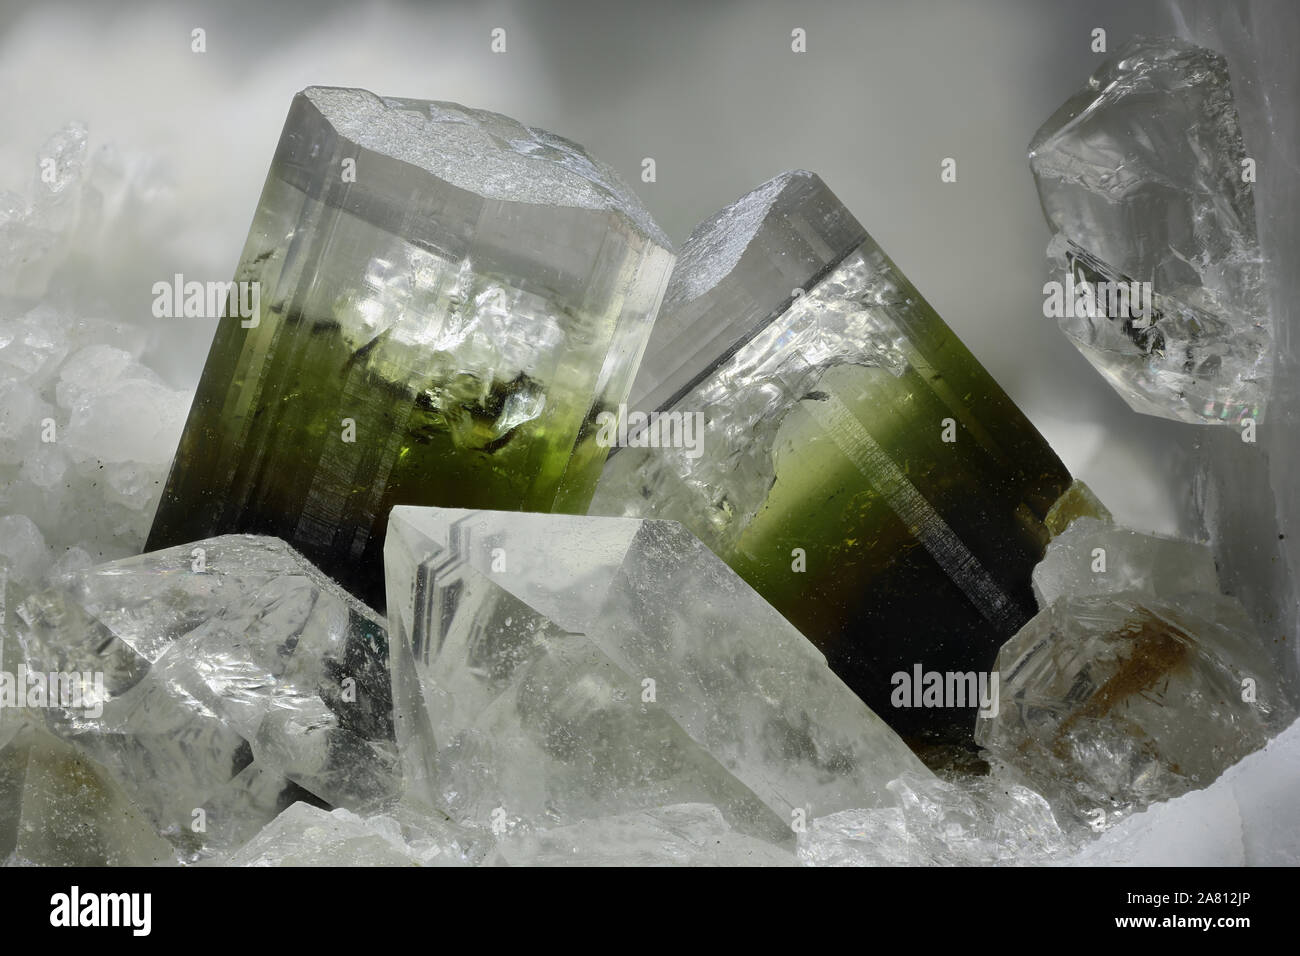 8.73 mm group of Elbaite crystals from Rosina vein, San Piero in Campo, Campo nell'Elba, Elba Island, Livorno Province, Tuscany, Italy Stock Photo